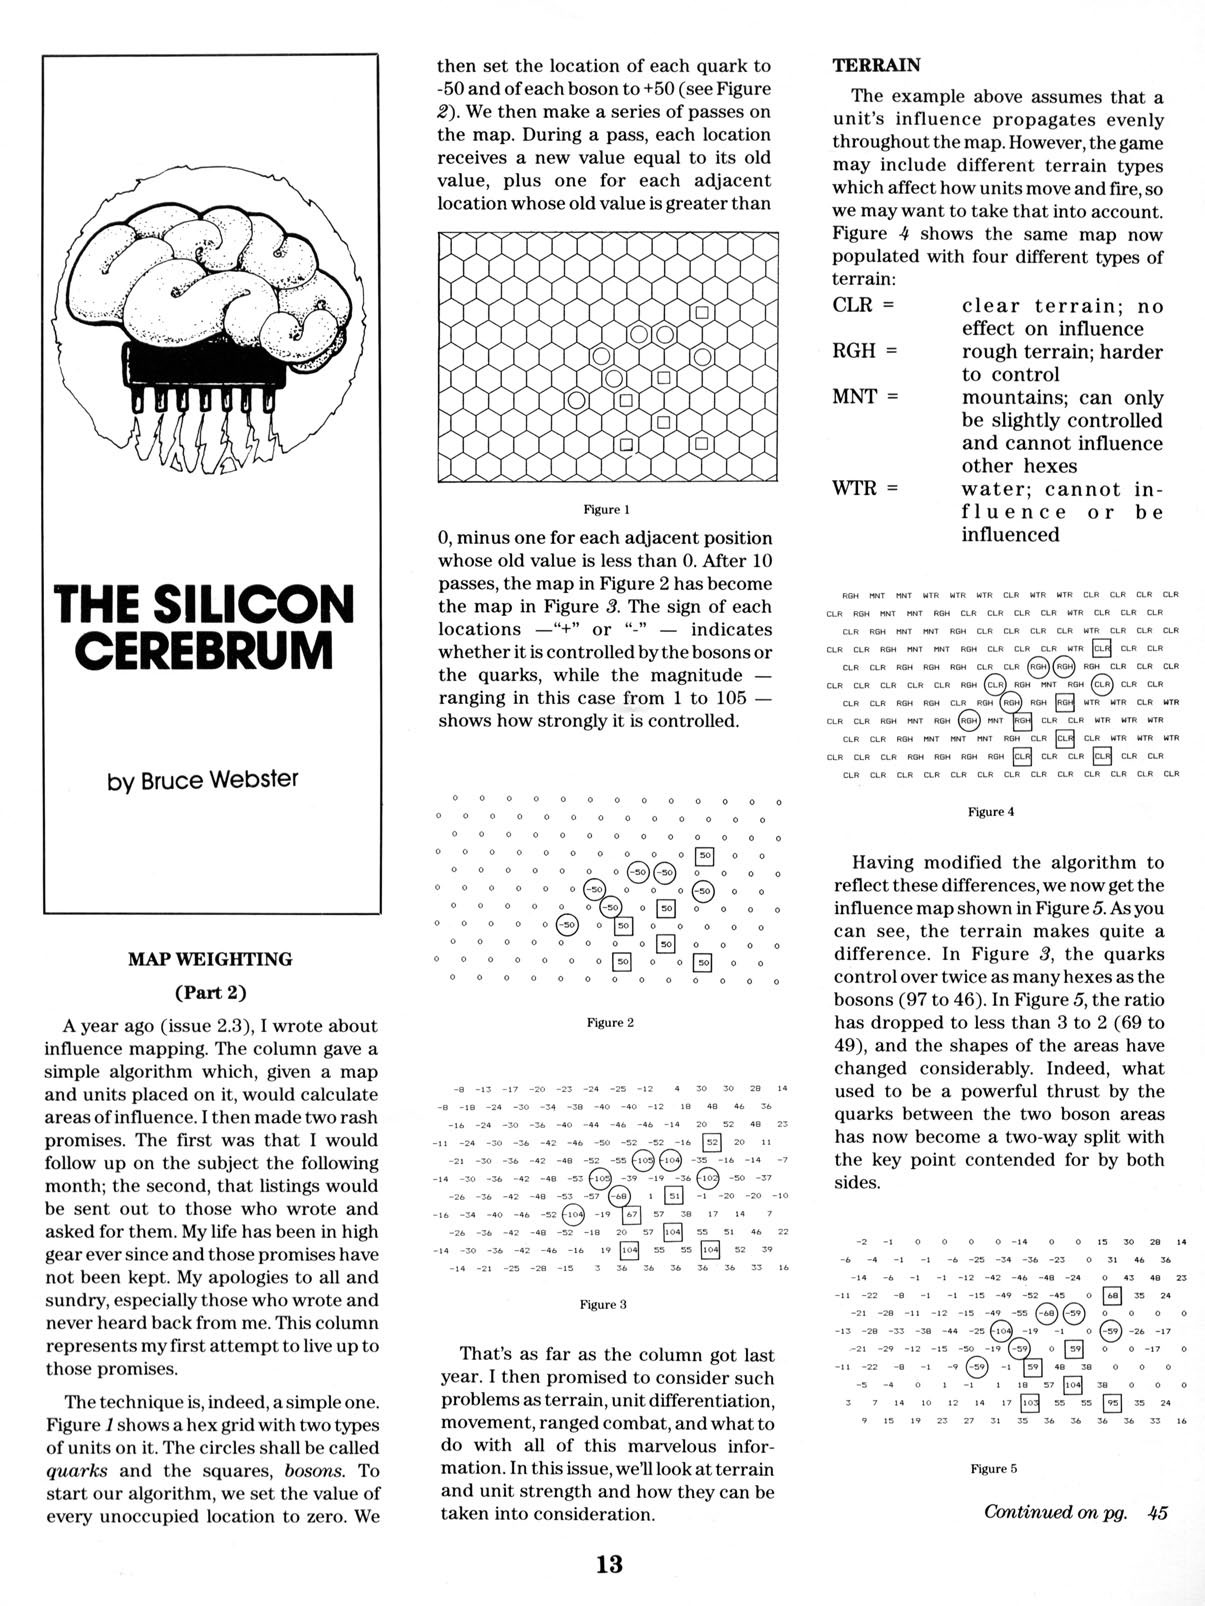 The Silicon Cerebrum